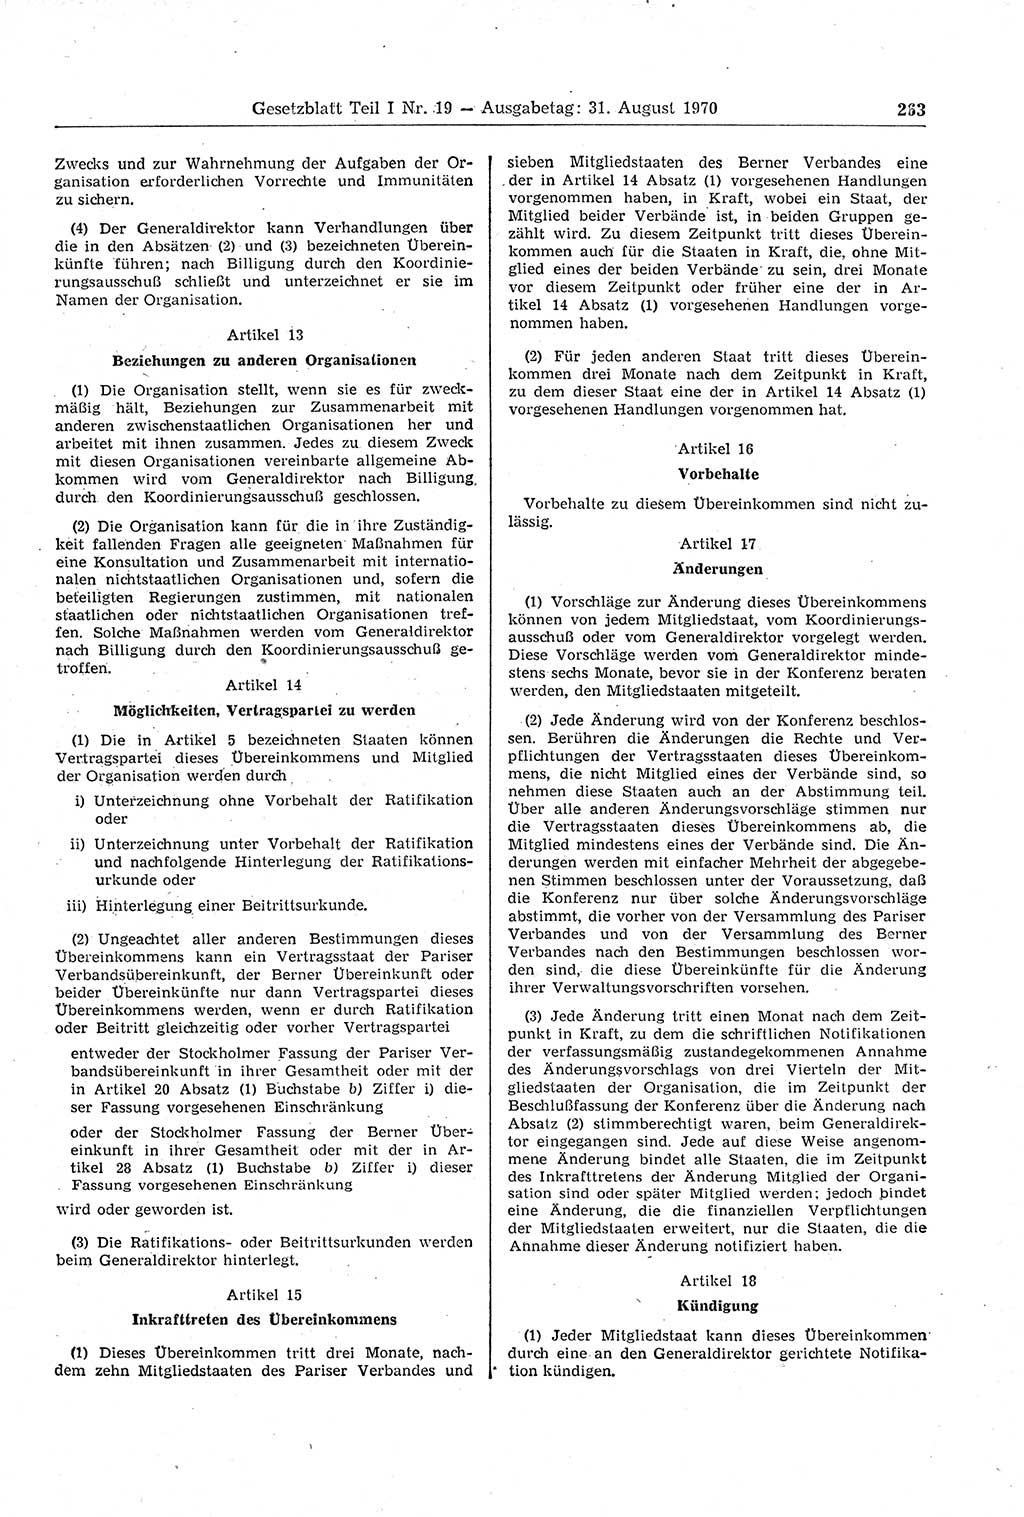 Gesetzblatt (GBl.) der Deutschen Demokratischen Republik (DDR) Teil Ⅰ 1970, Seite 263 (GBl. DDR Ⅰ 1970, S. 263)